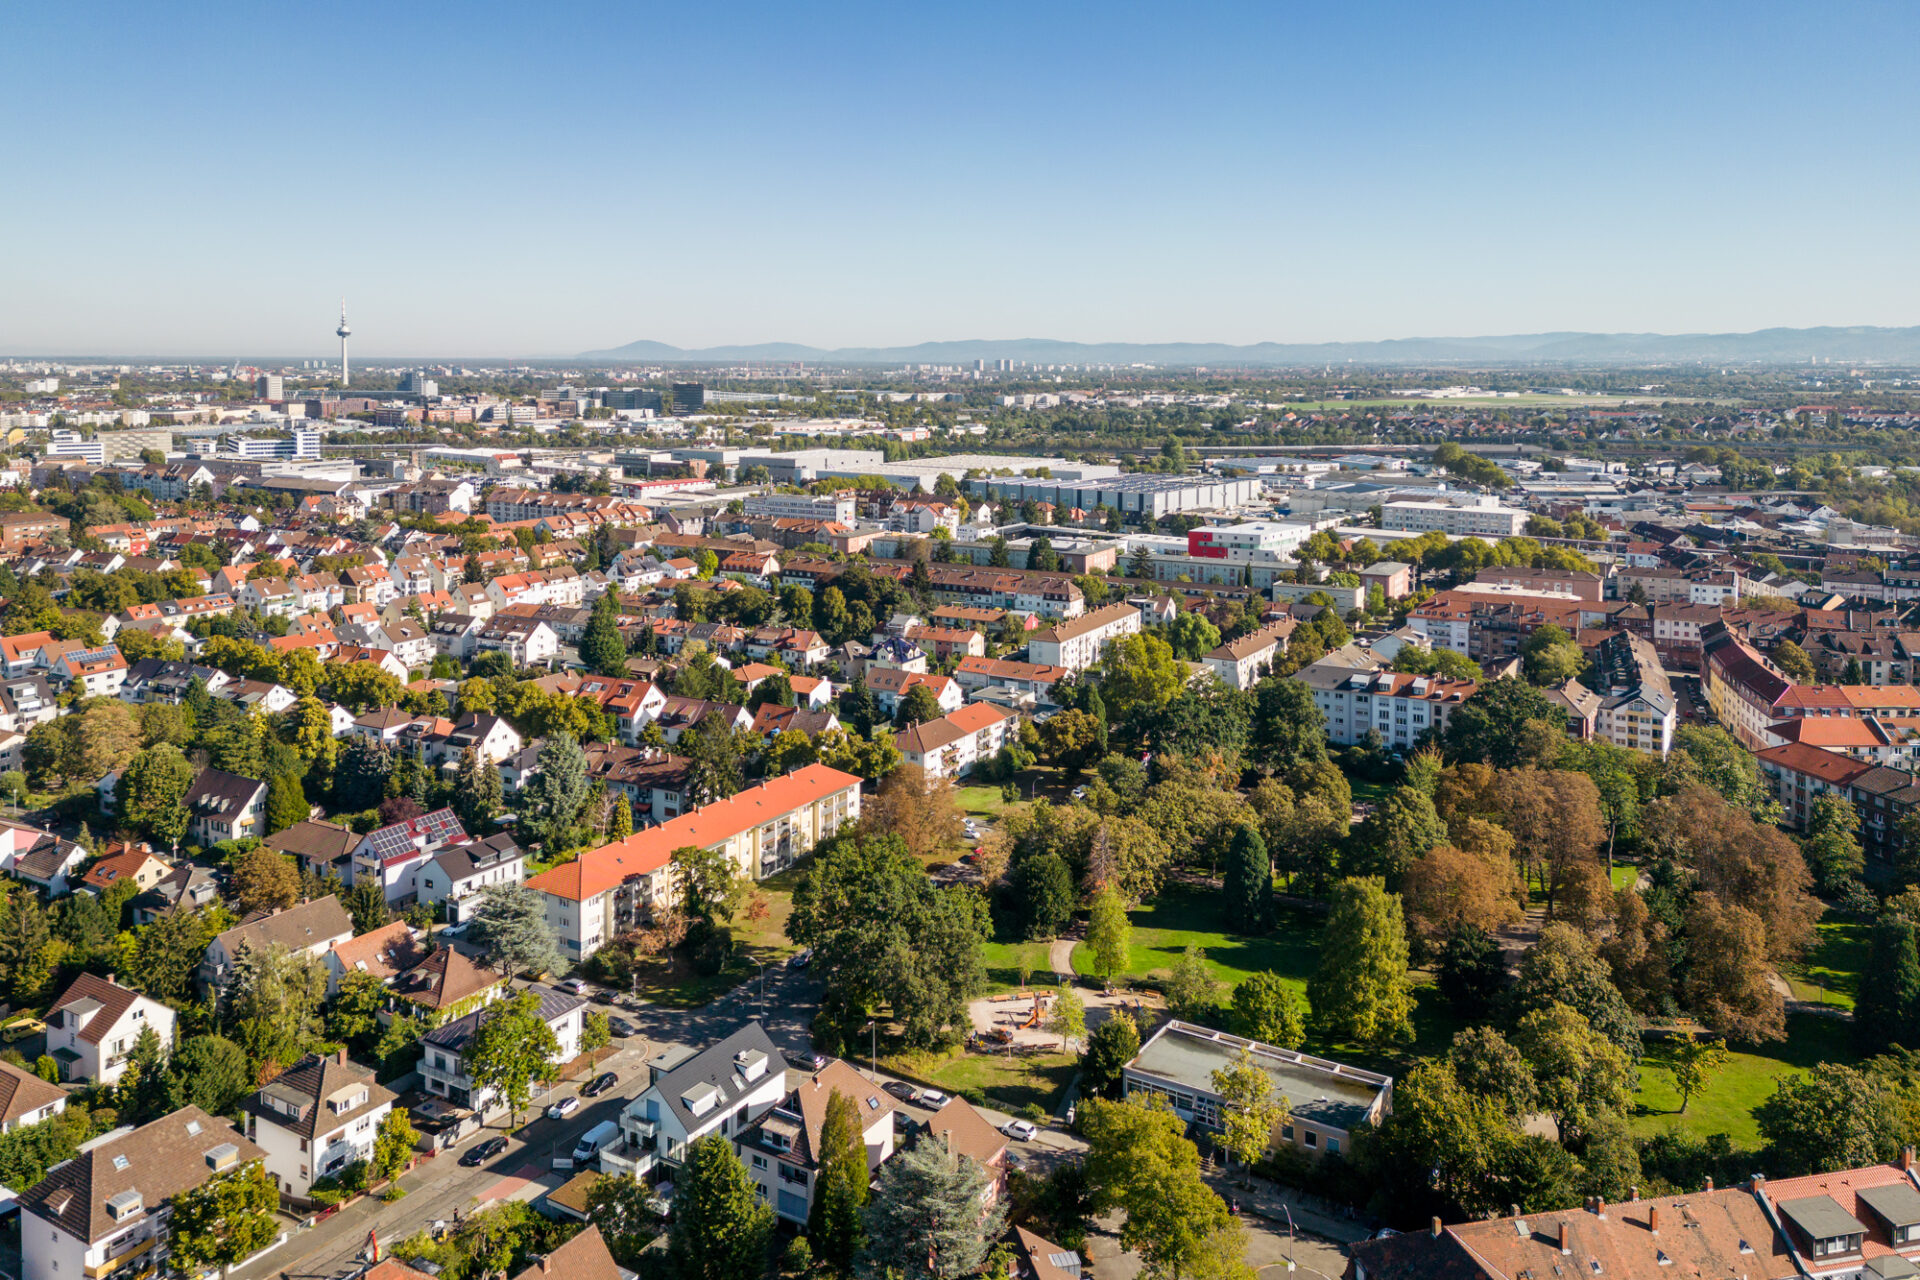 Luftaufnahme der Stadtlandschaft von Almenhof, die an einem klaren Tag dichte Wohngebiete mit modernen Gebäuden und dazwischen viel Grün zeigt.